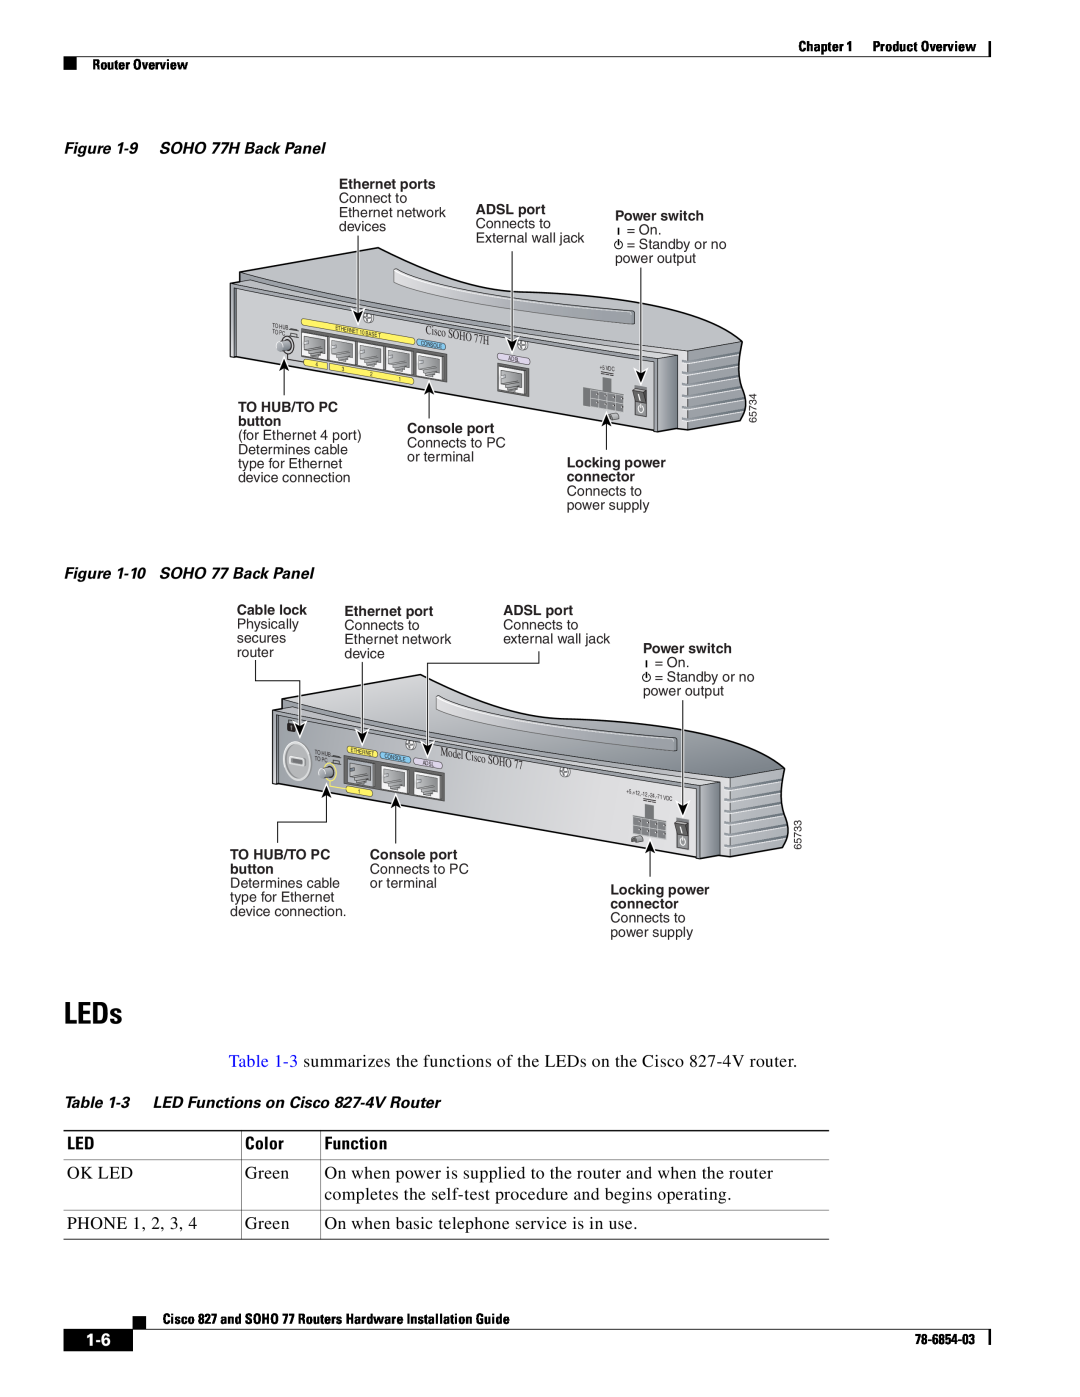 Cisco Systems manual LEDs, 9 SOHO 77H Back Panel, 10 SOHO 77 Back Panel, 3 LED Functions on Cisco 827-4V Router, Soho 